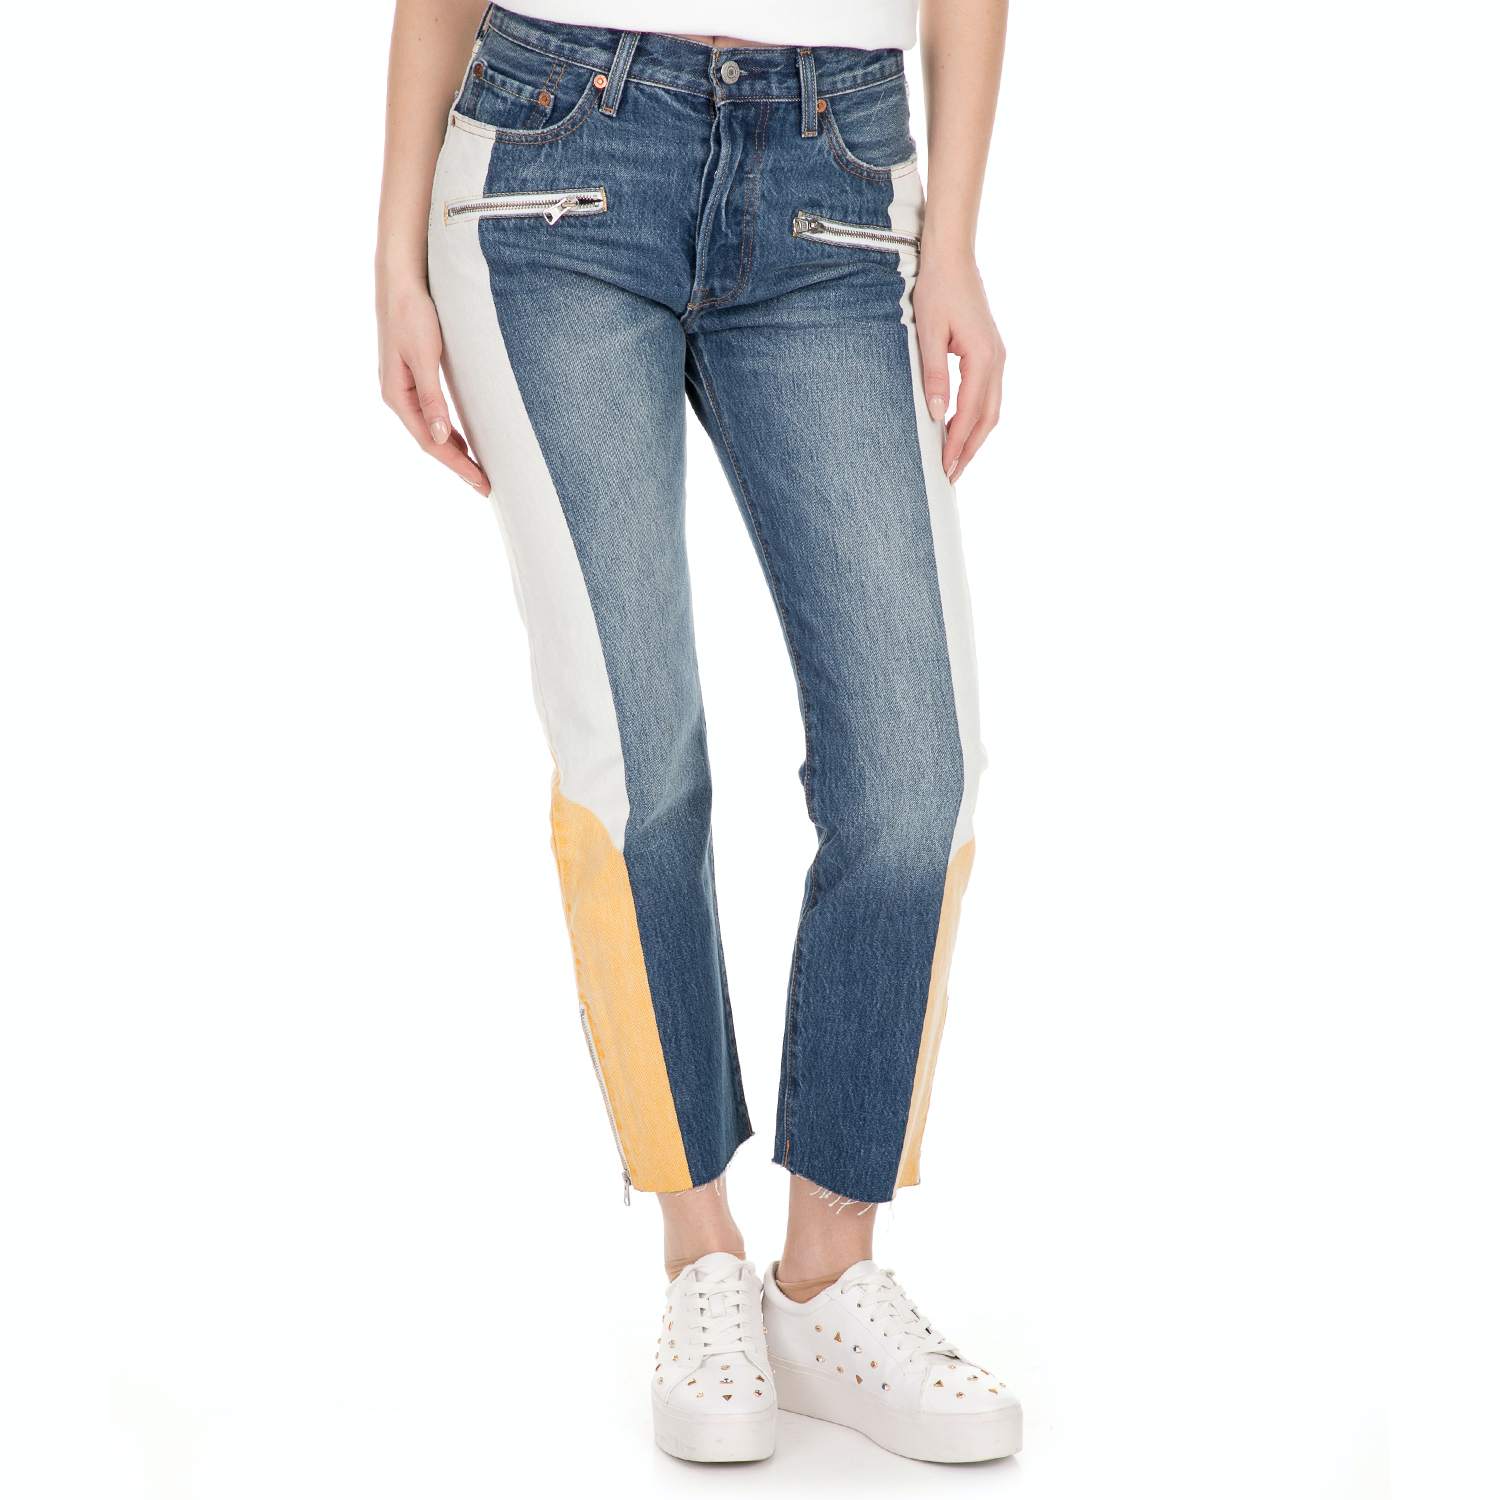 Γυναικεία/Ρούχα/Τζίν/Straight LEVI'S - Γυναικείο cropped jean παντελόνι LEVI'S MOTO 501 SHOW TEETH μπλε λευκό